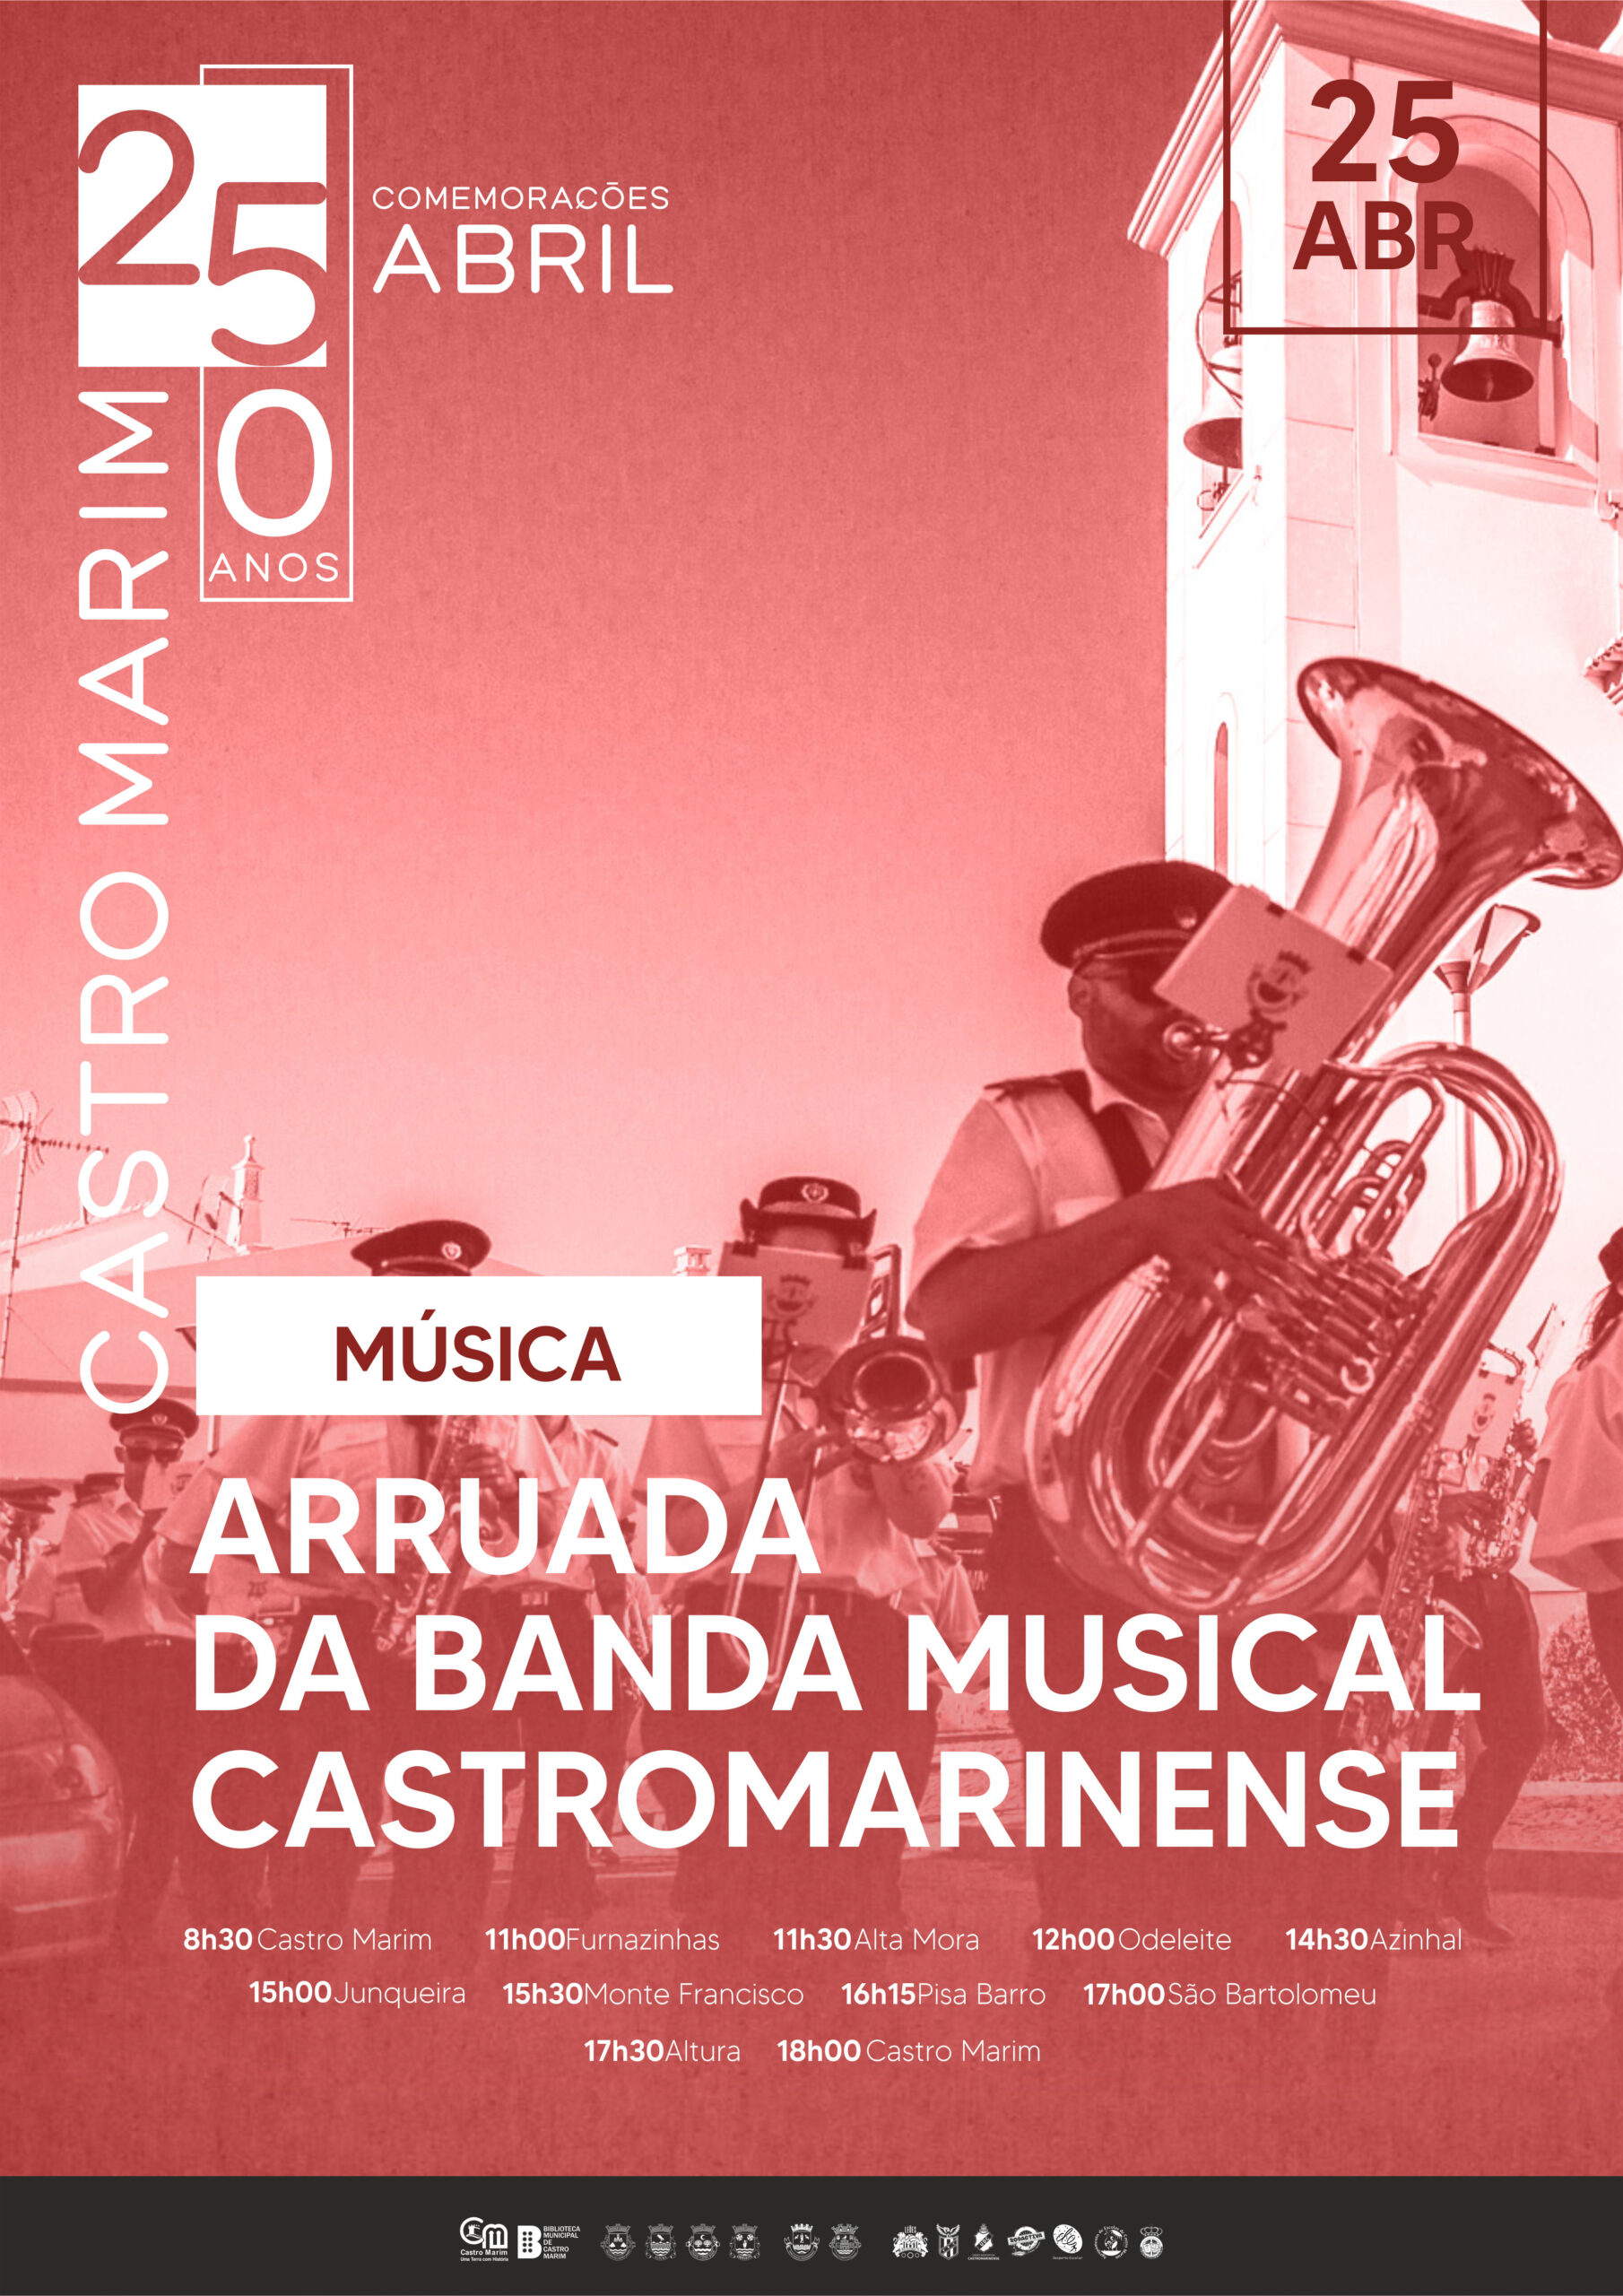 Capa Oficial do Evento Arruada da Banda Musical Castromarinense